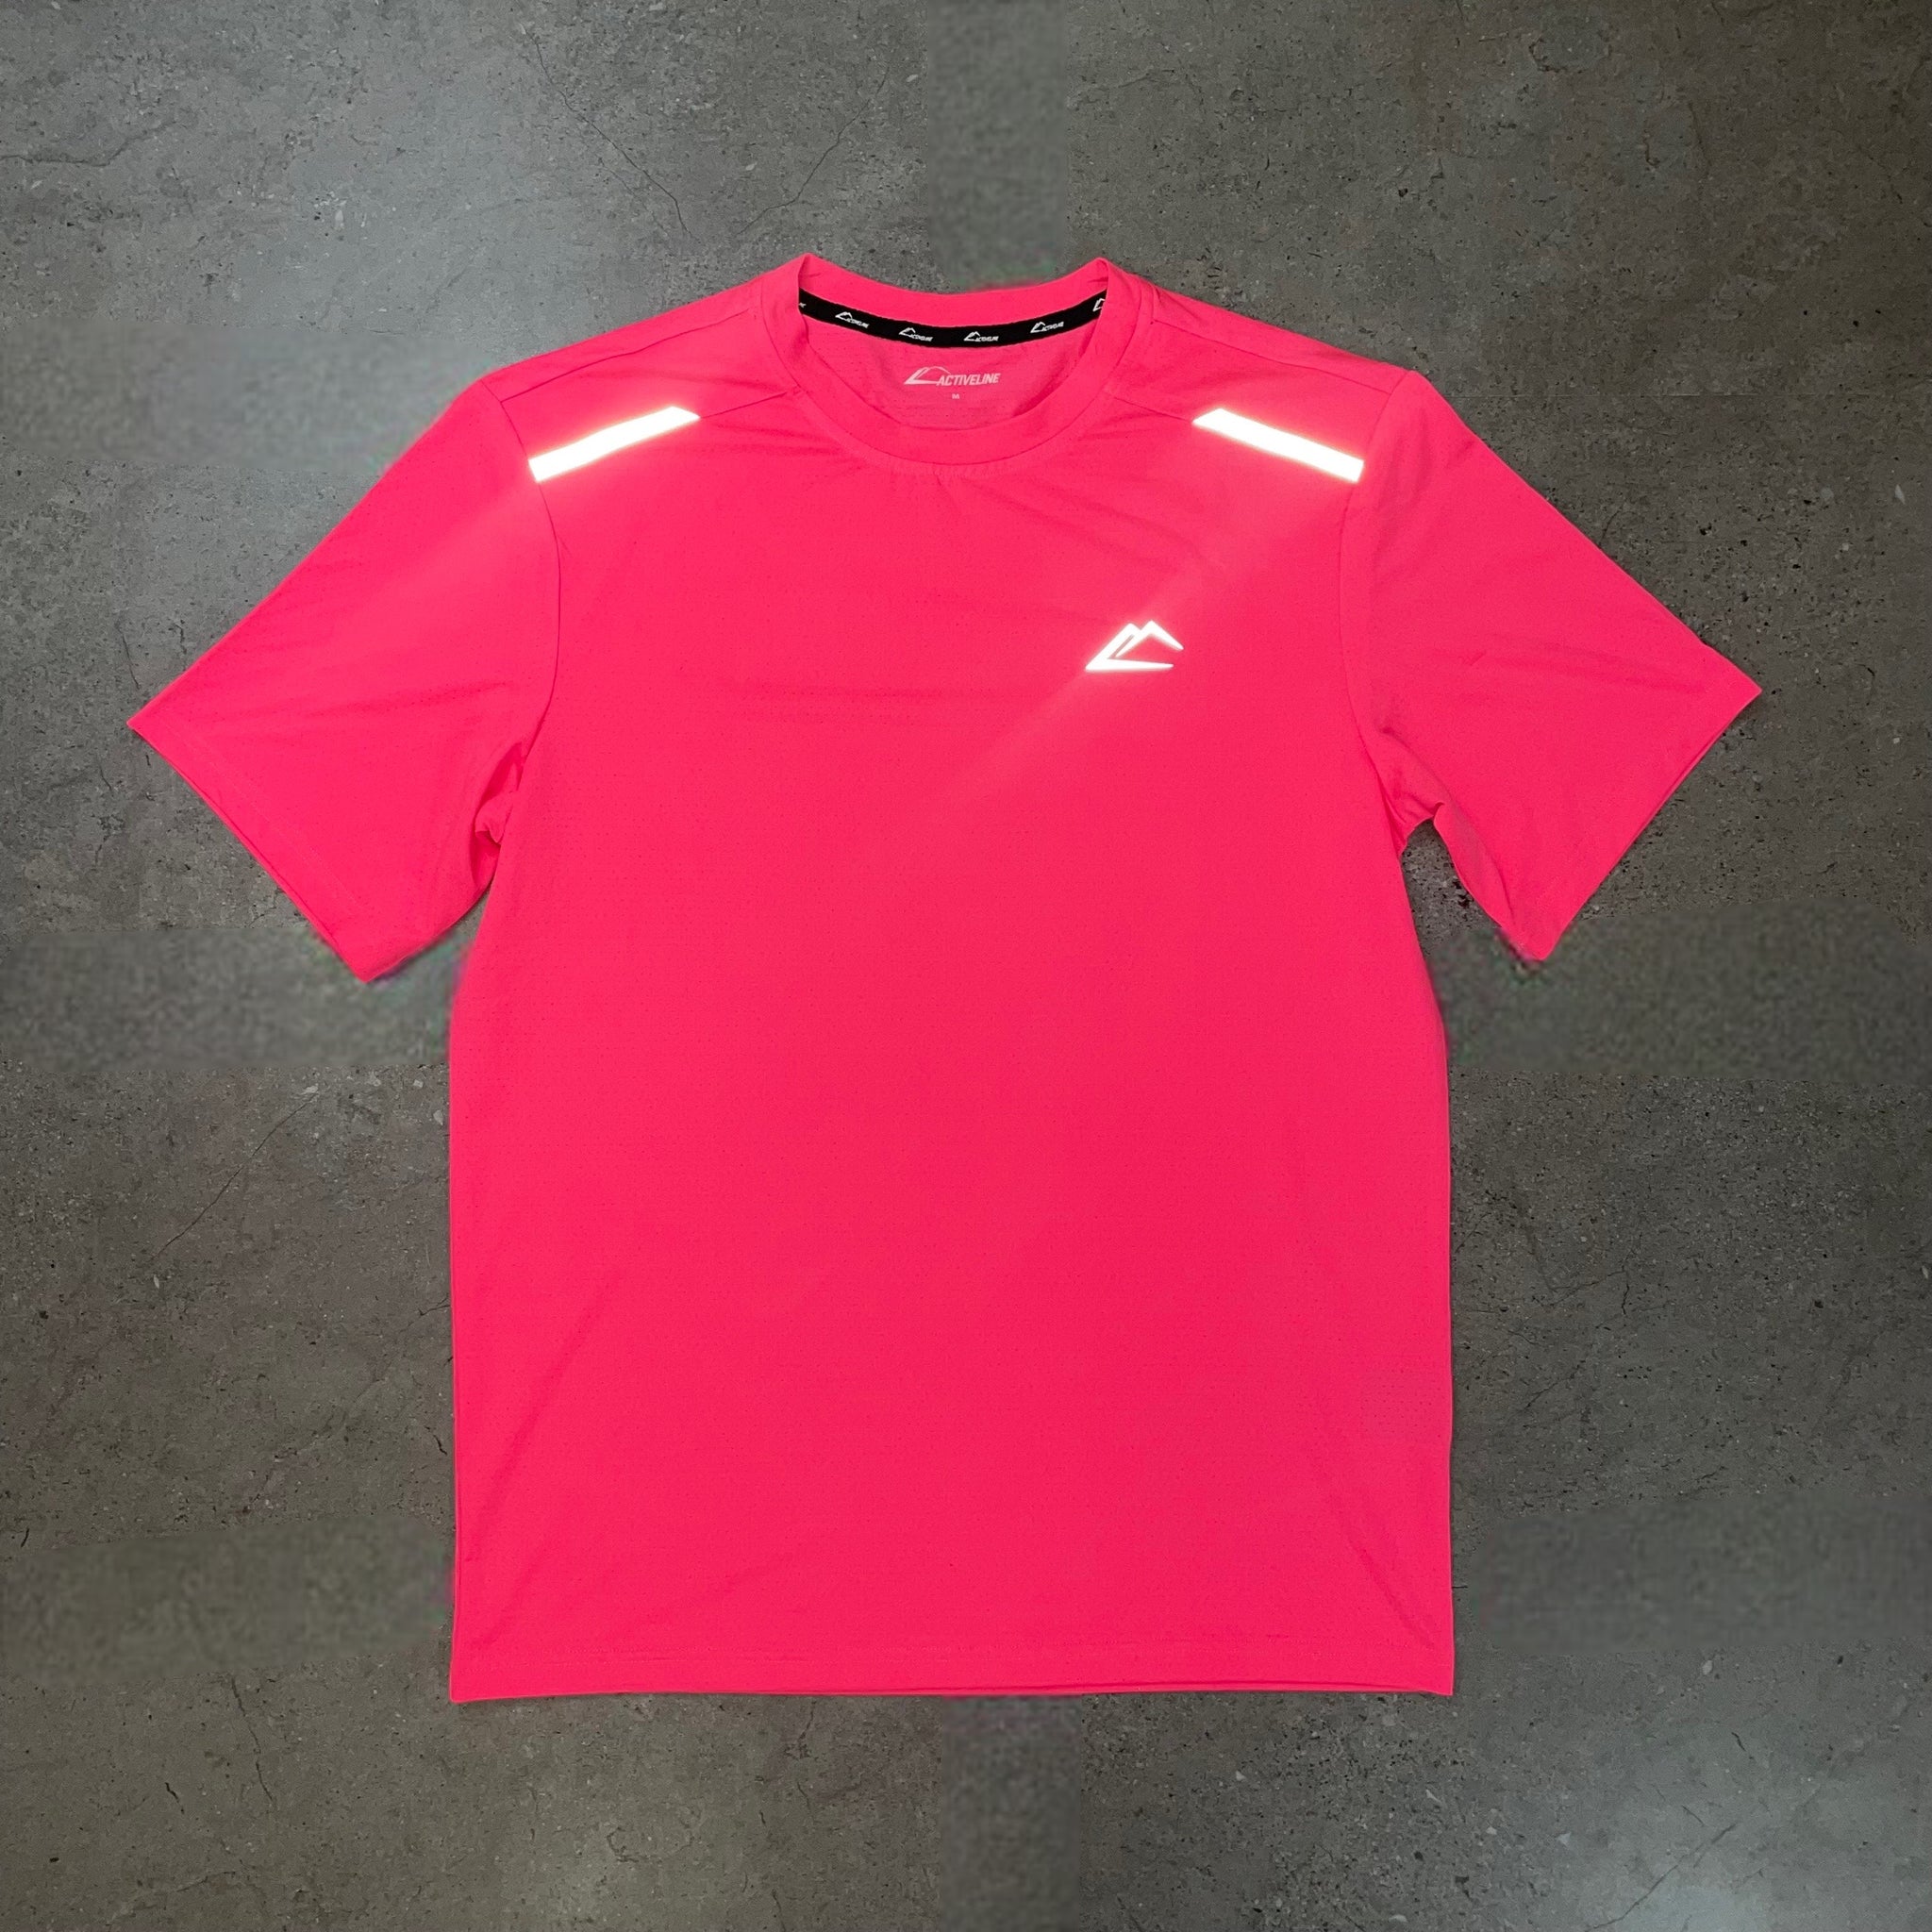 ActiveLine Terra T-Shirt - Neon Pink